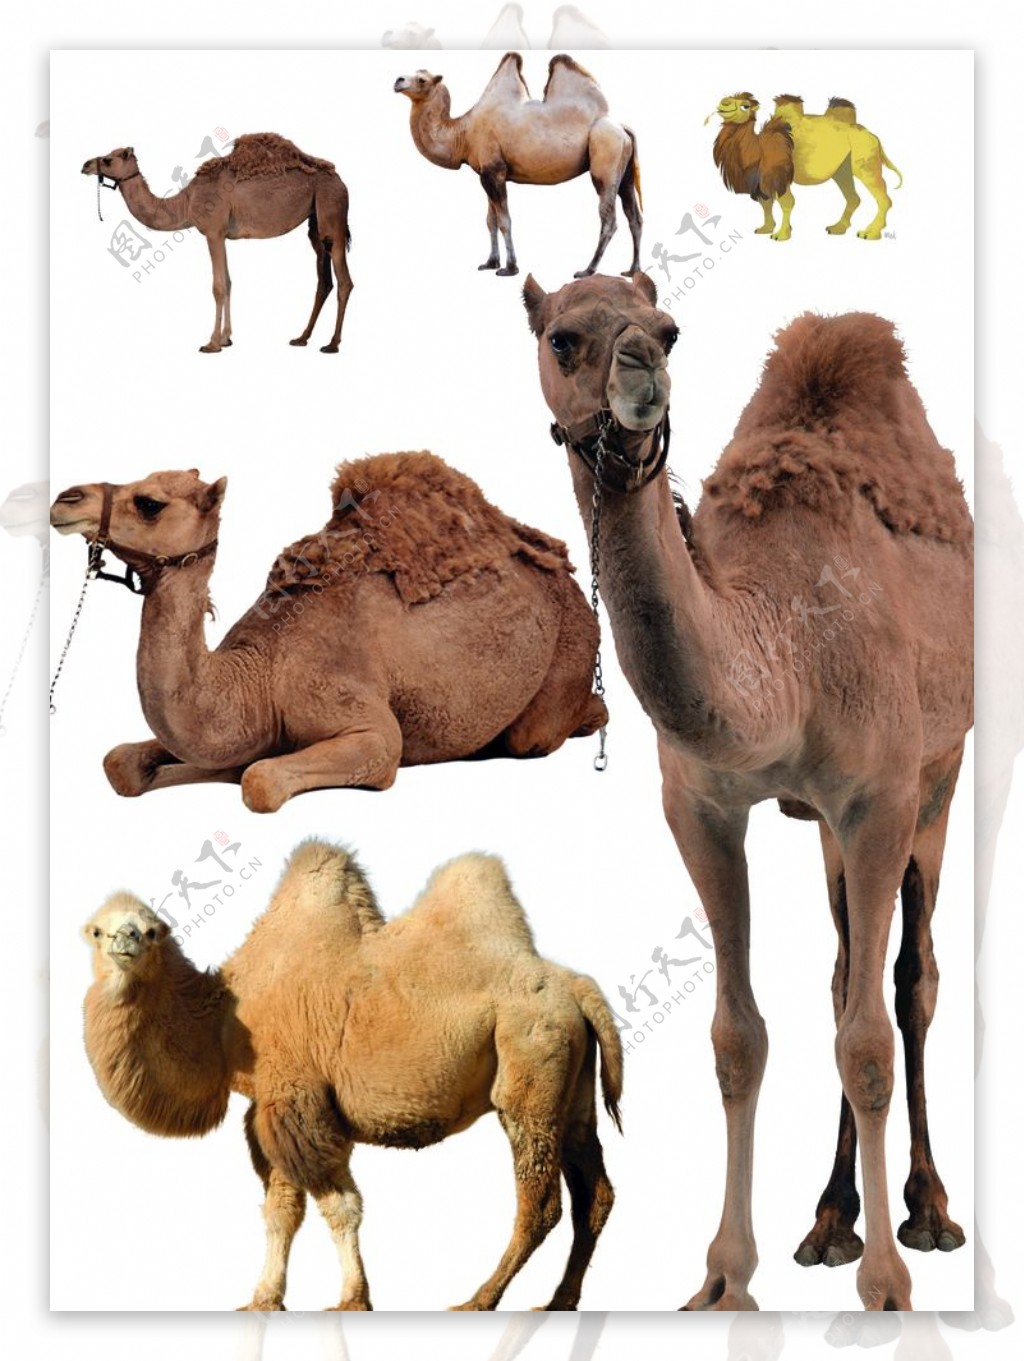 骆驼图片